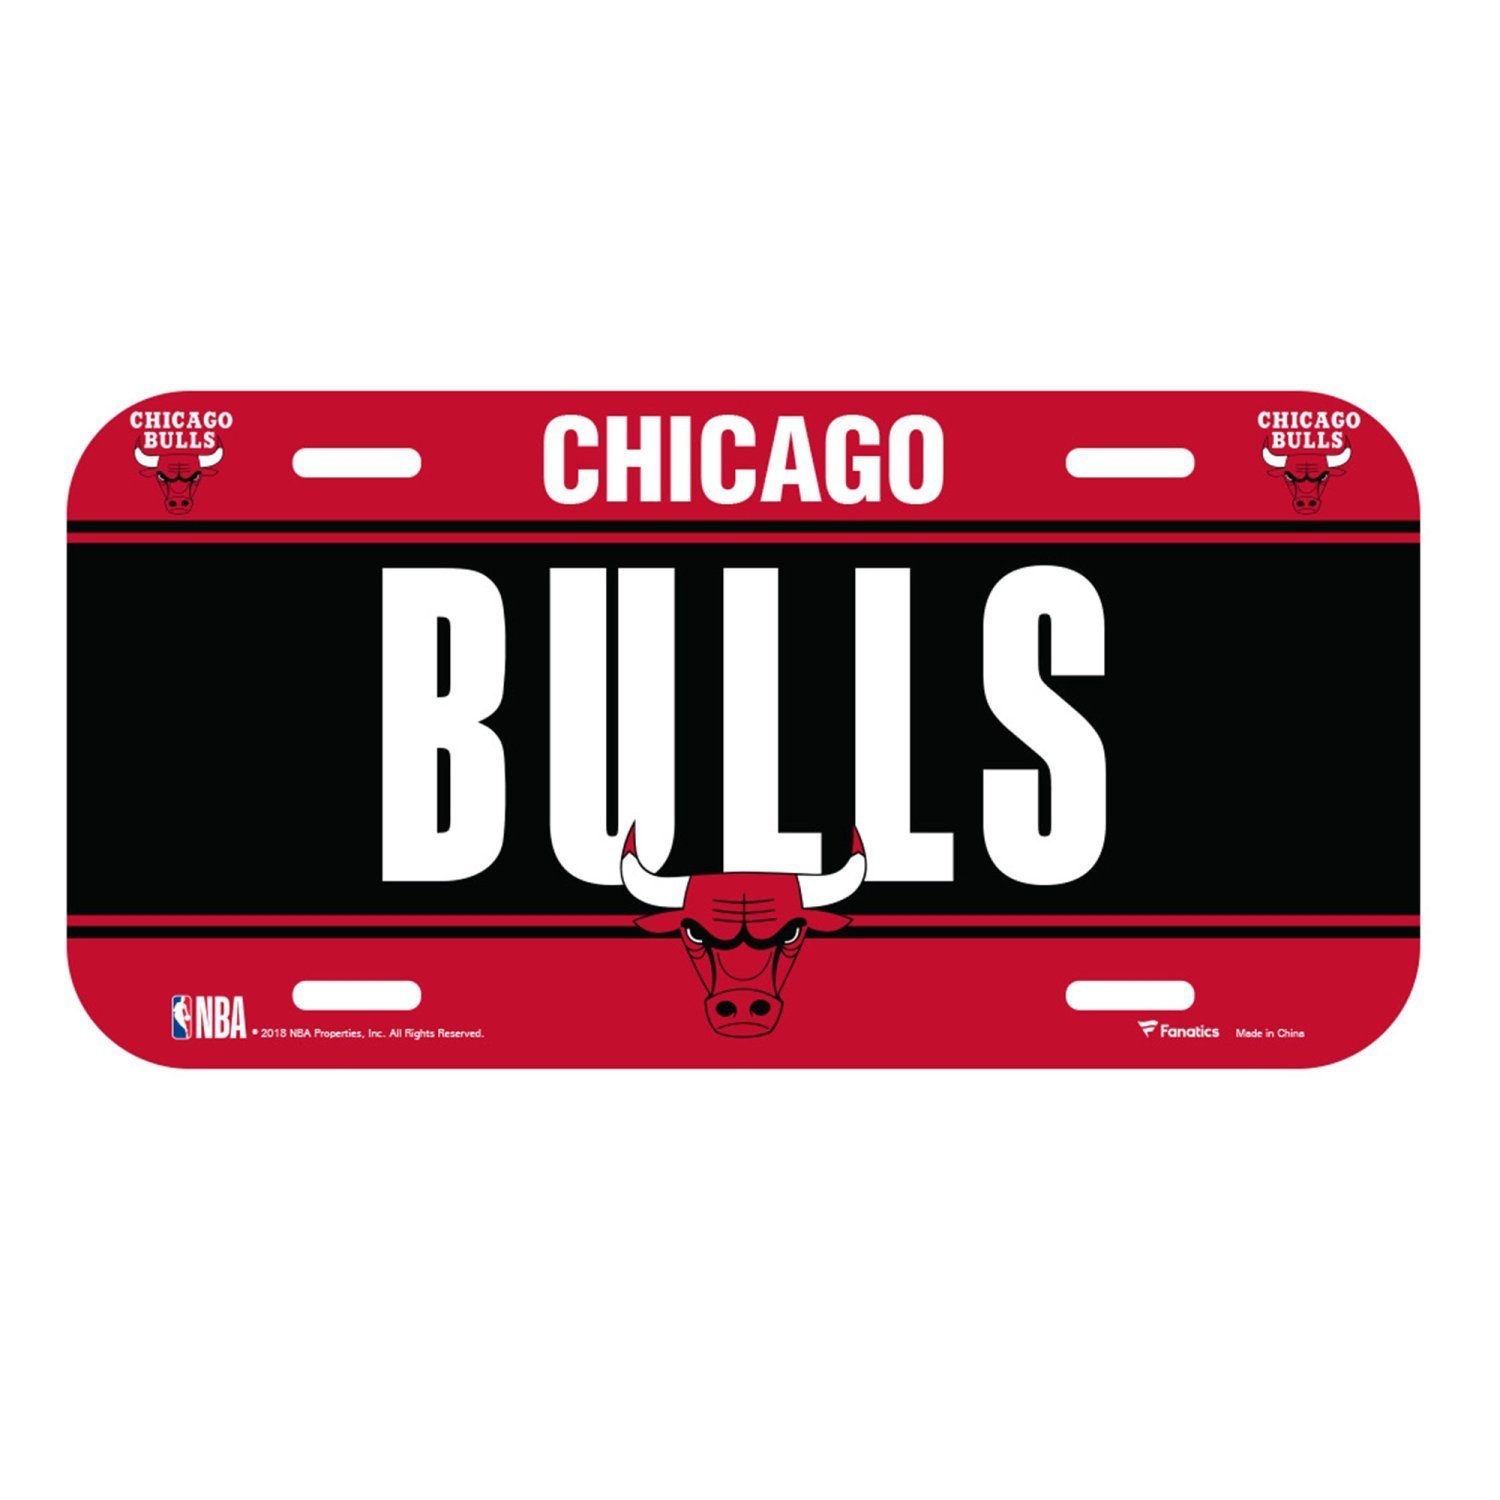 Fanatics Schmuckset NBA Kennzeichenschild Bulls Chicago